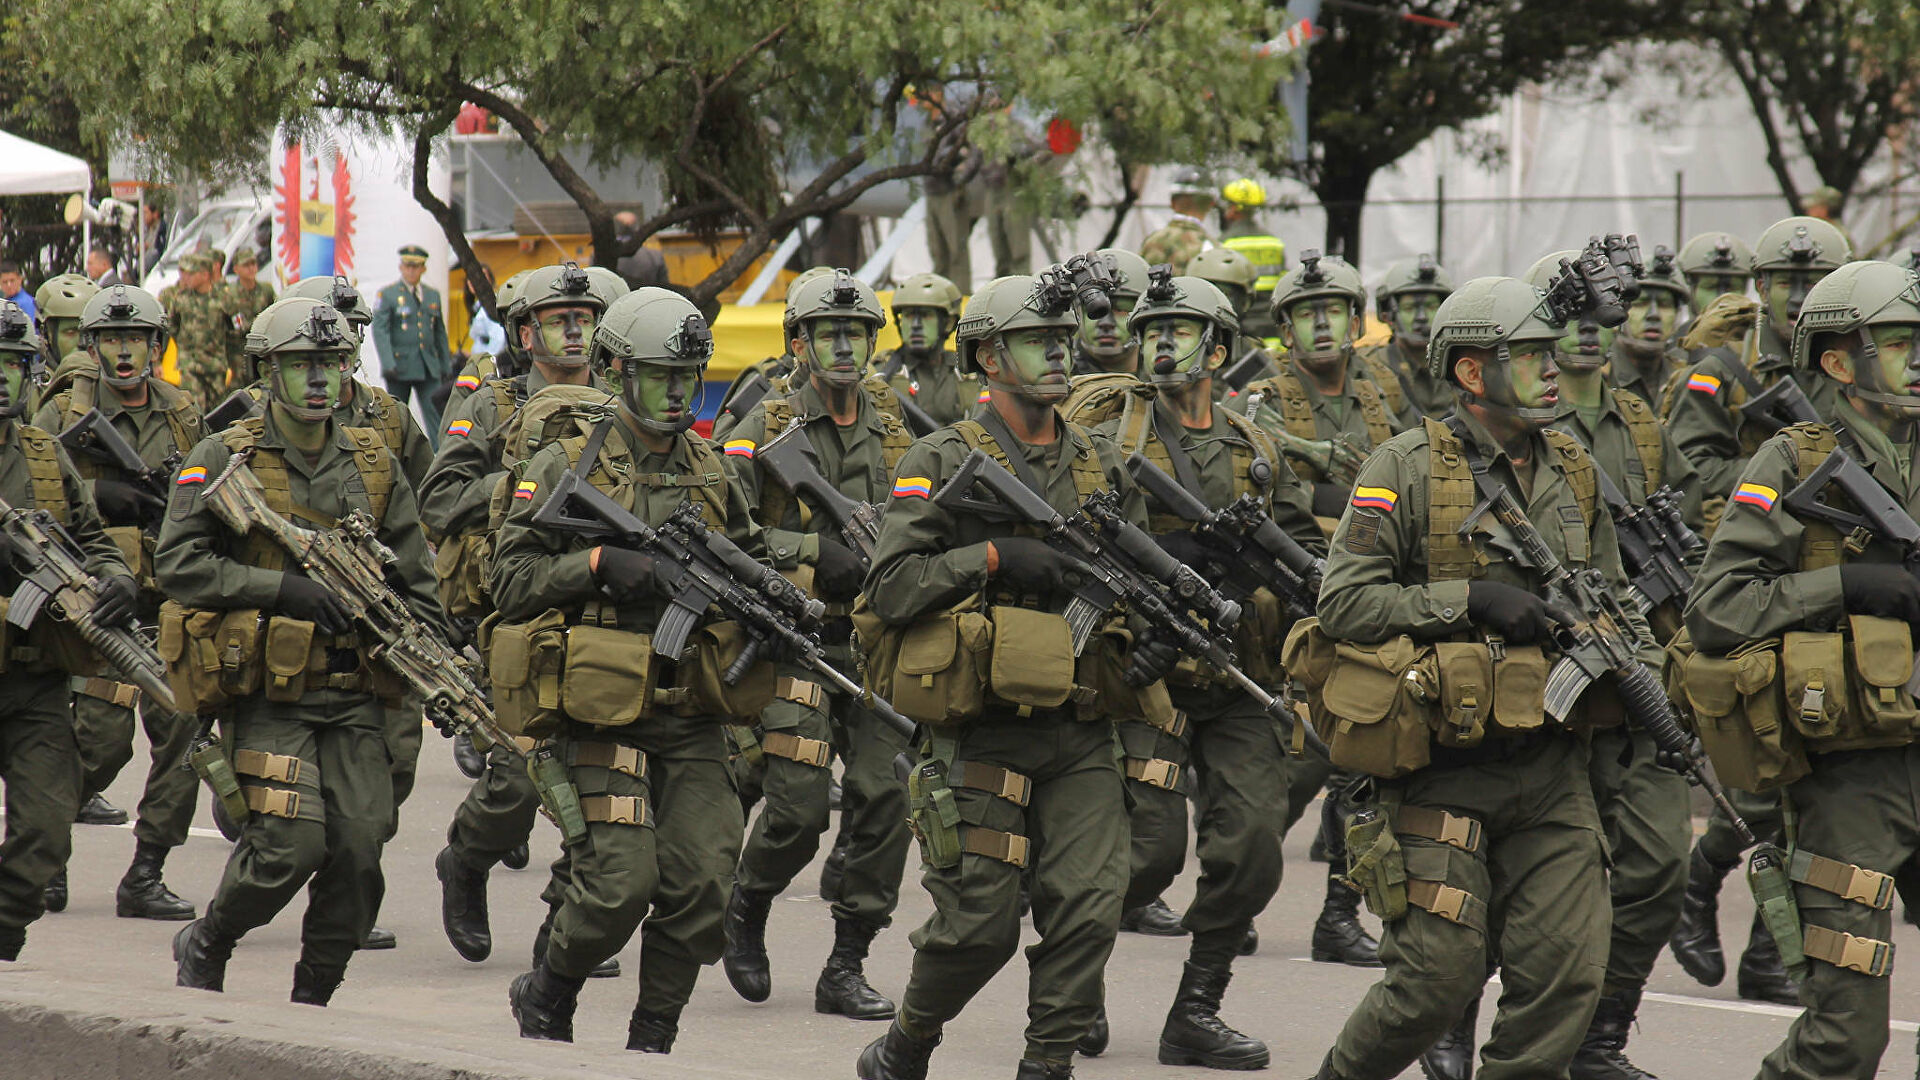  El crudo relato de un exsoldado colombiano que participó de los falsos positivos